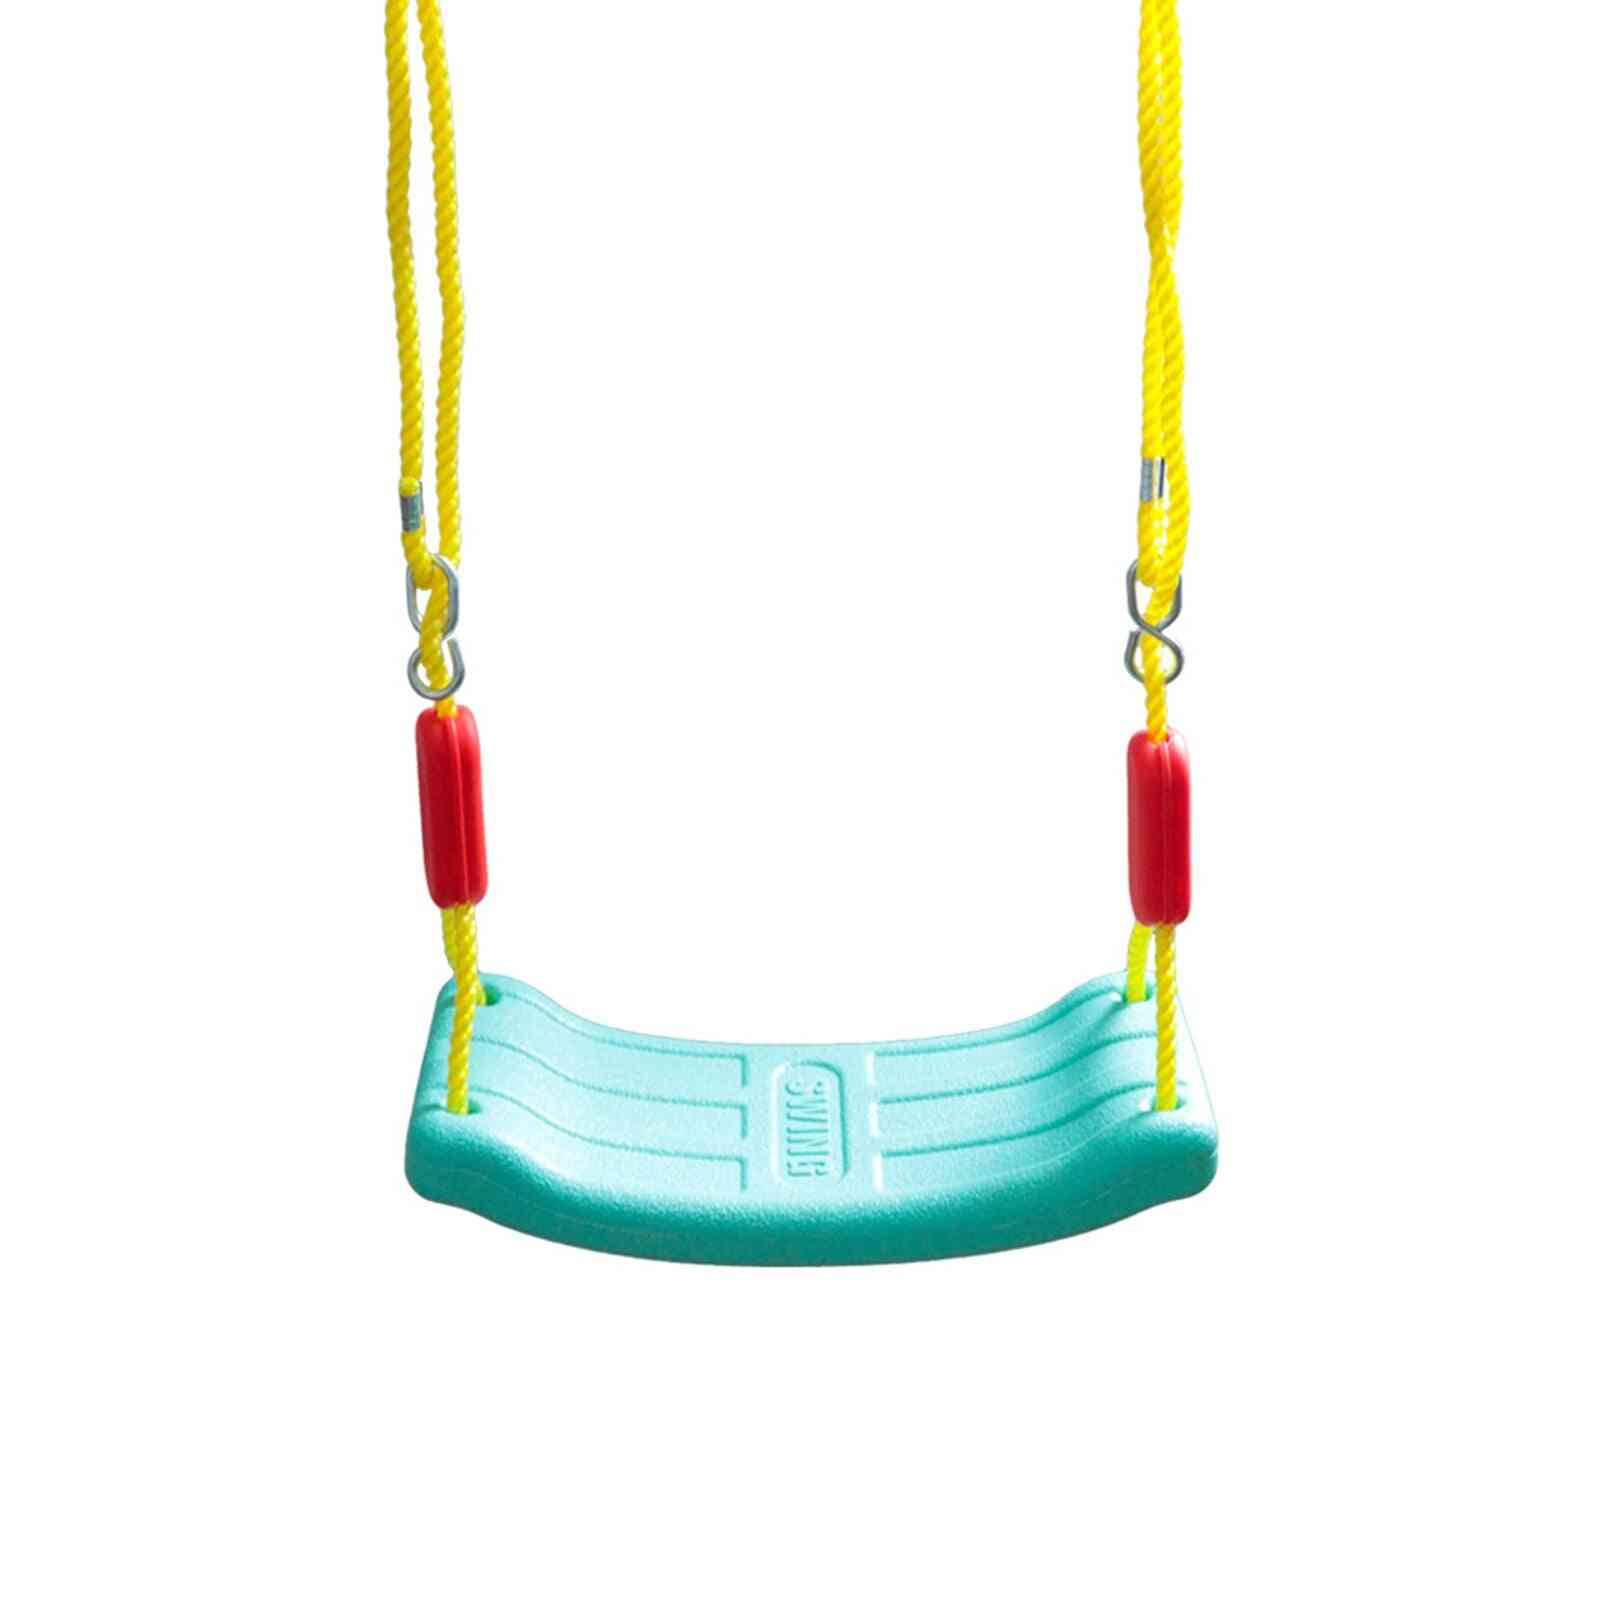 Kids Outdoor Indoor Garden Plastic Swing Seat Accessories With Adjustable Rope For, Sport